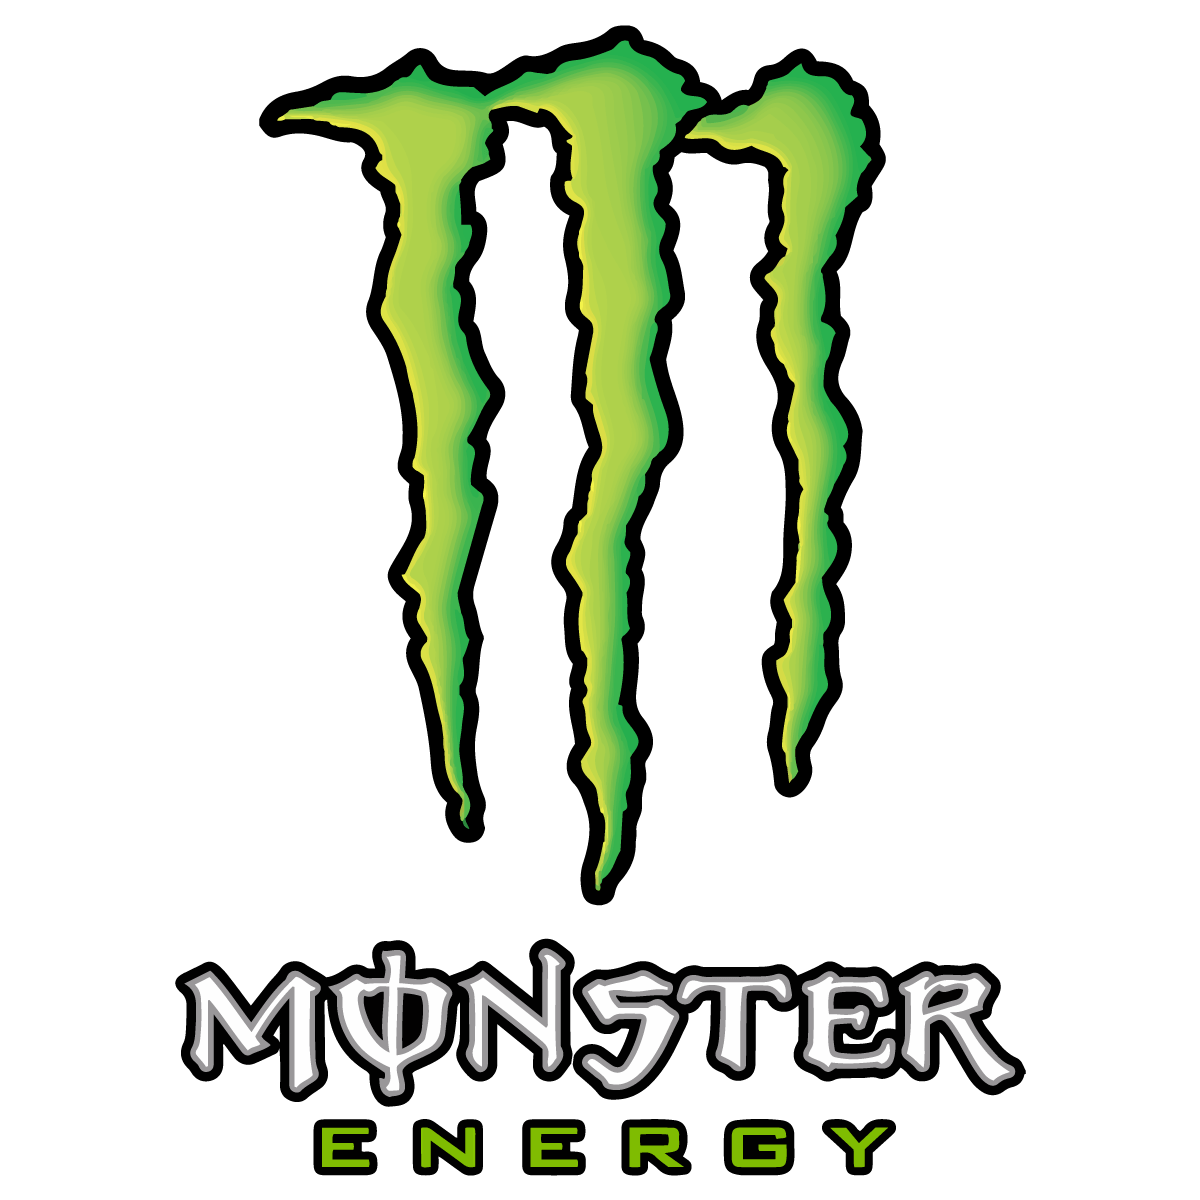 Monster Logo - Monster Energy Logo Vector Transparent Vertical | Free Vector ...